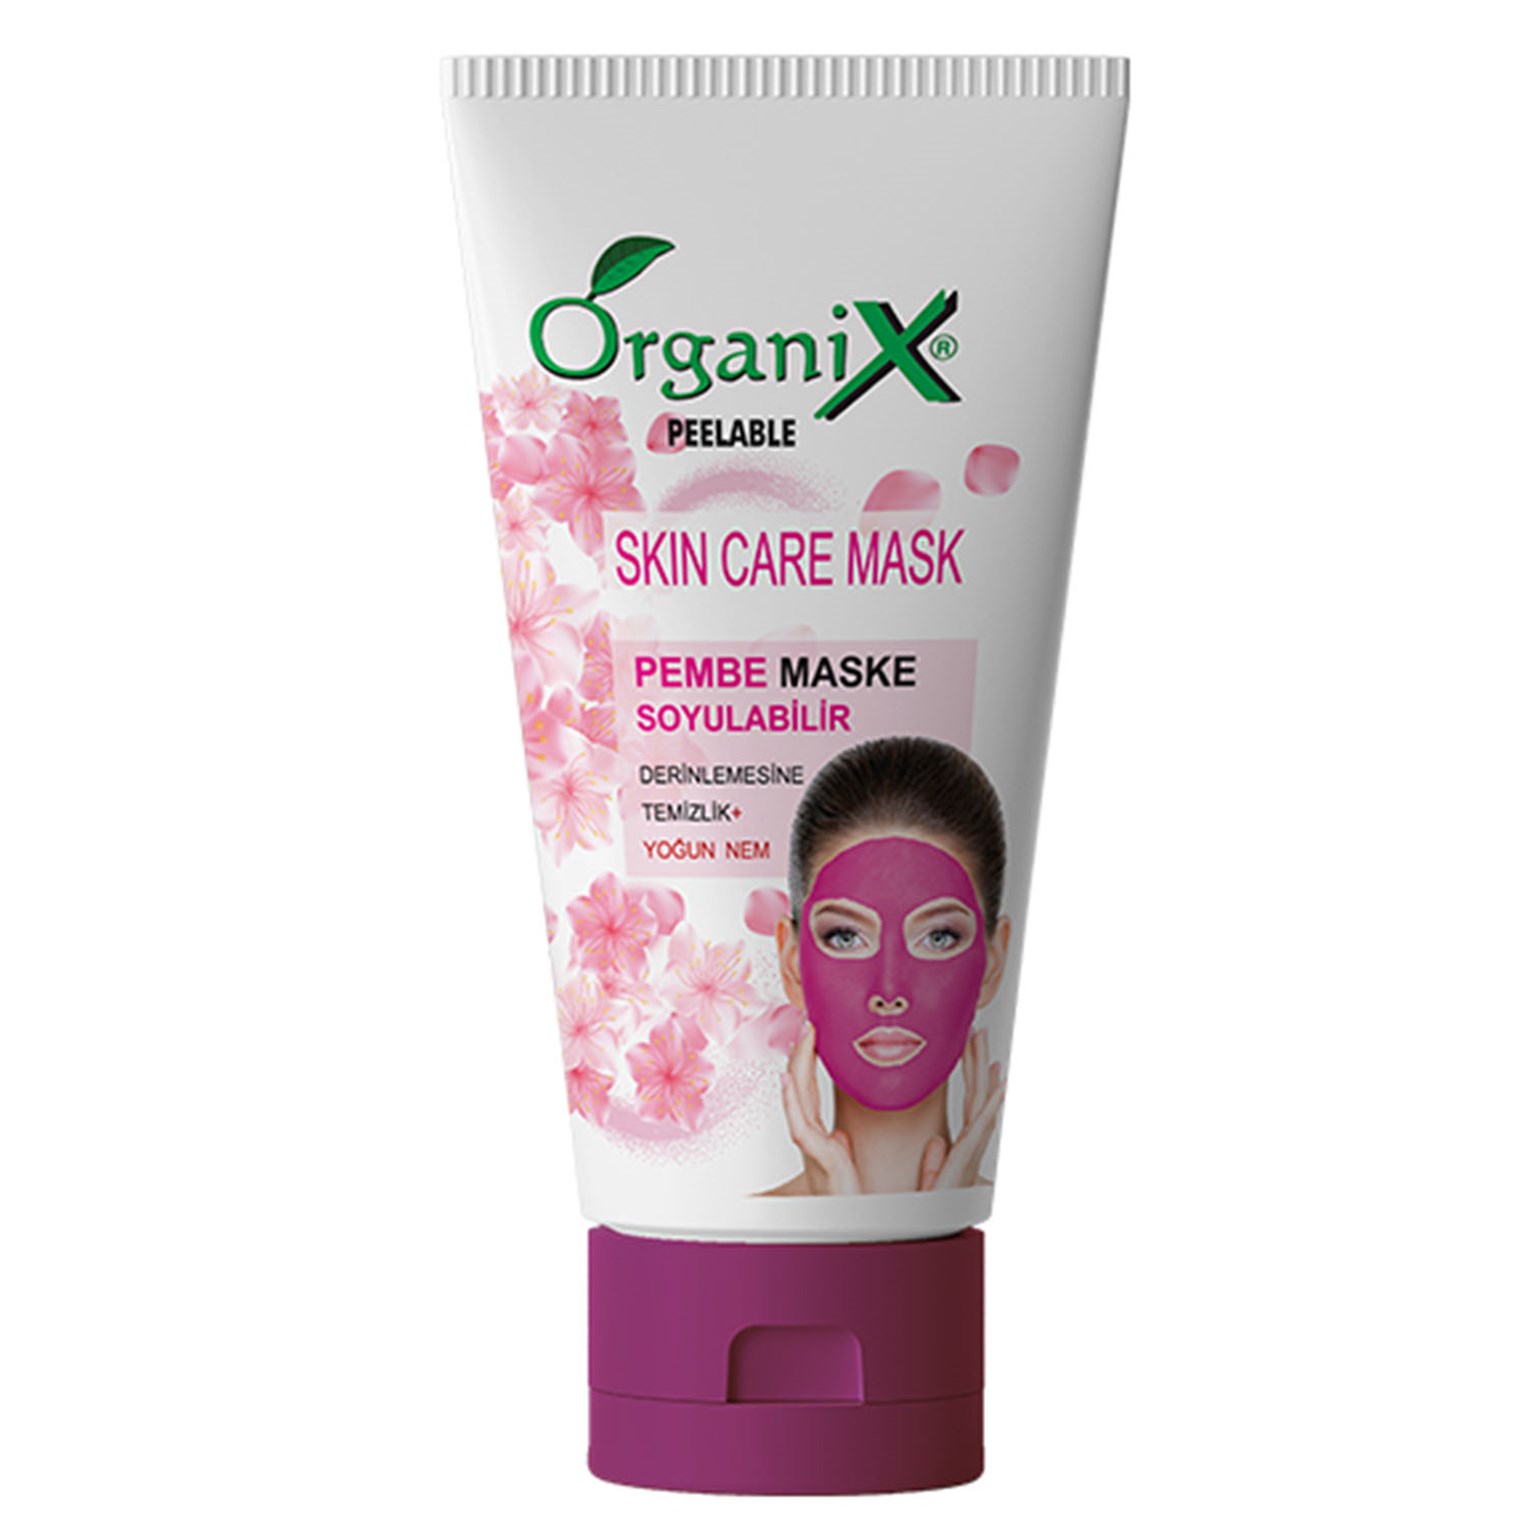 Organix Soyulabilir Pembe Maske 150 Ml | 7/24 Kozmetik